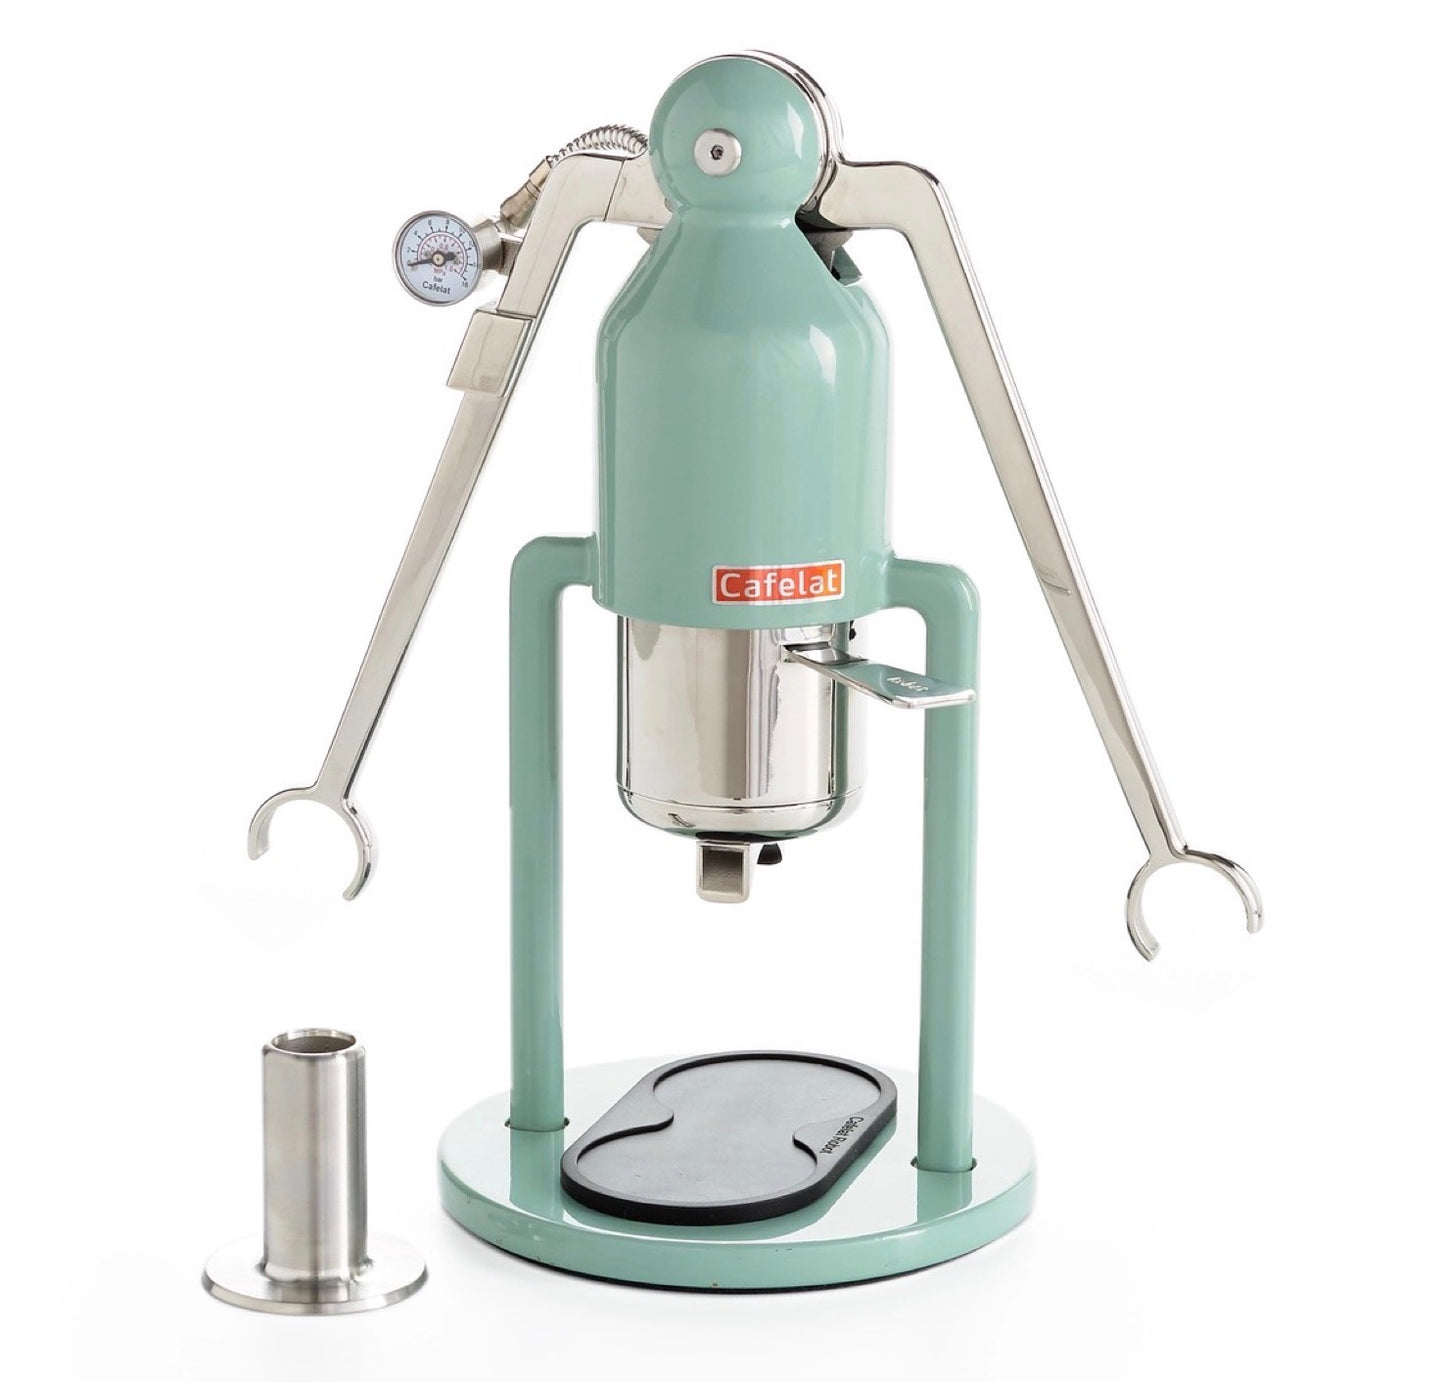 Cafelat Robot Espresso Maker (with pressure gauge)